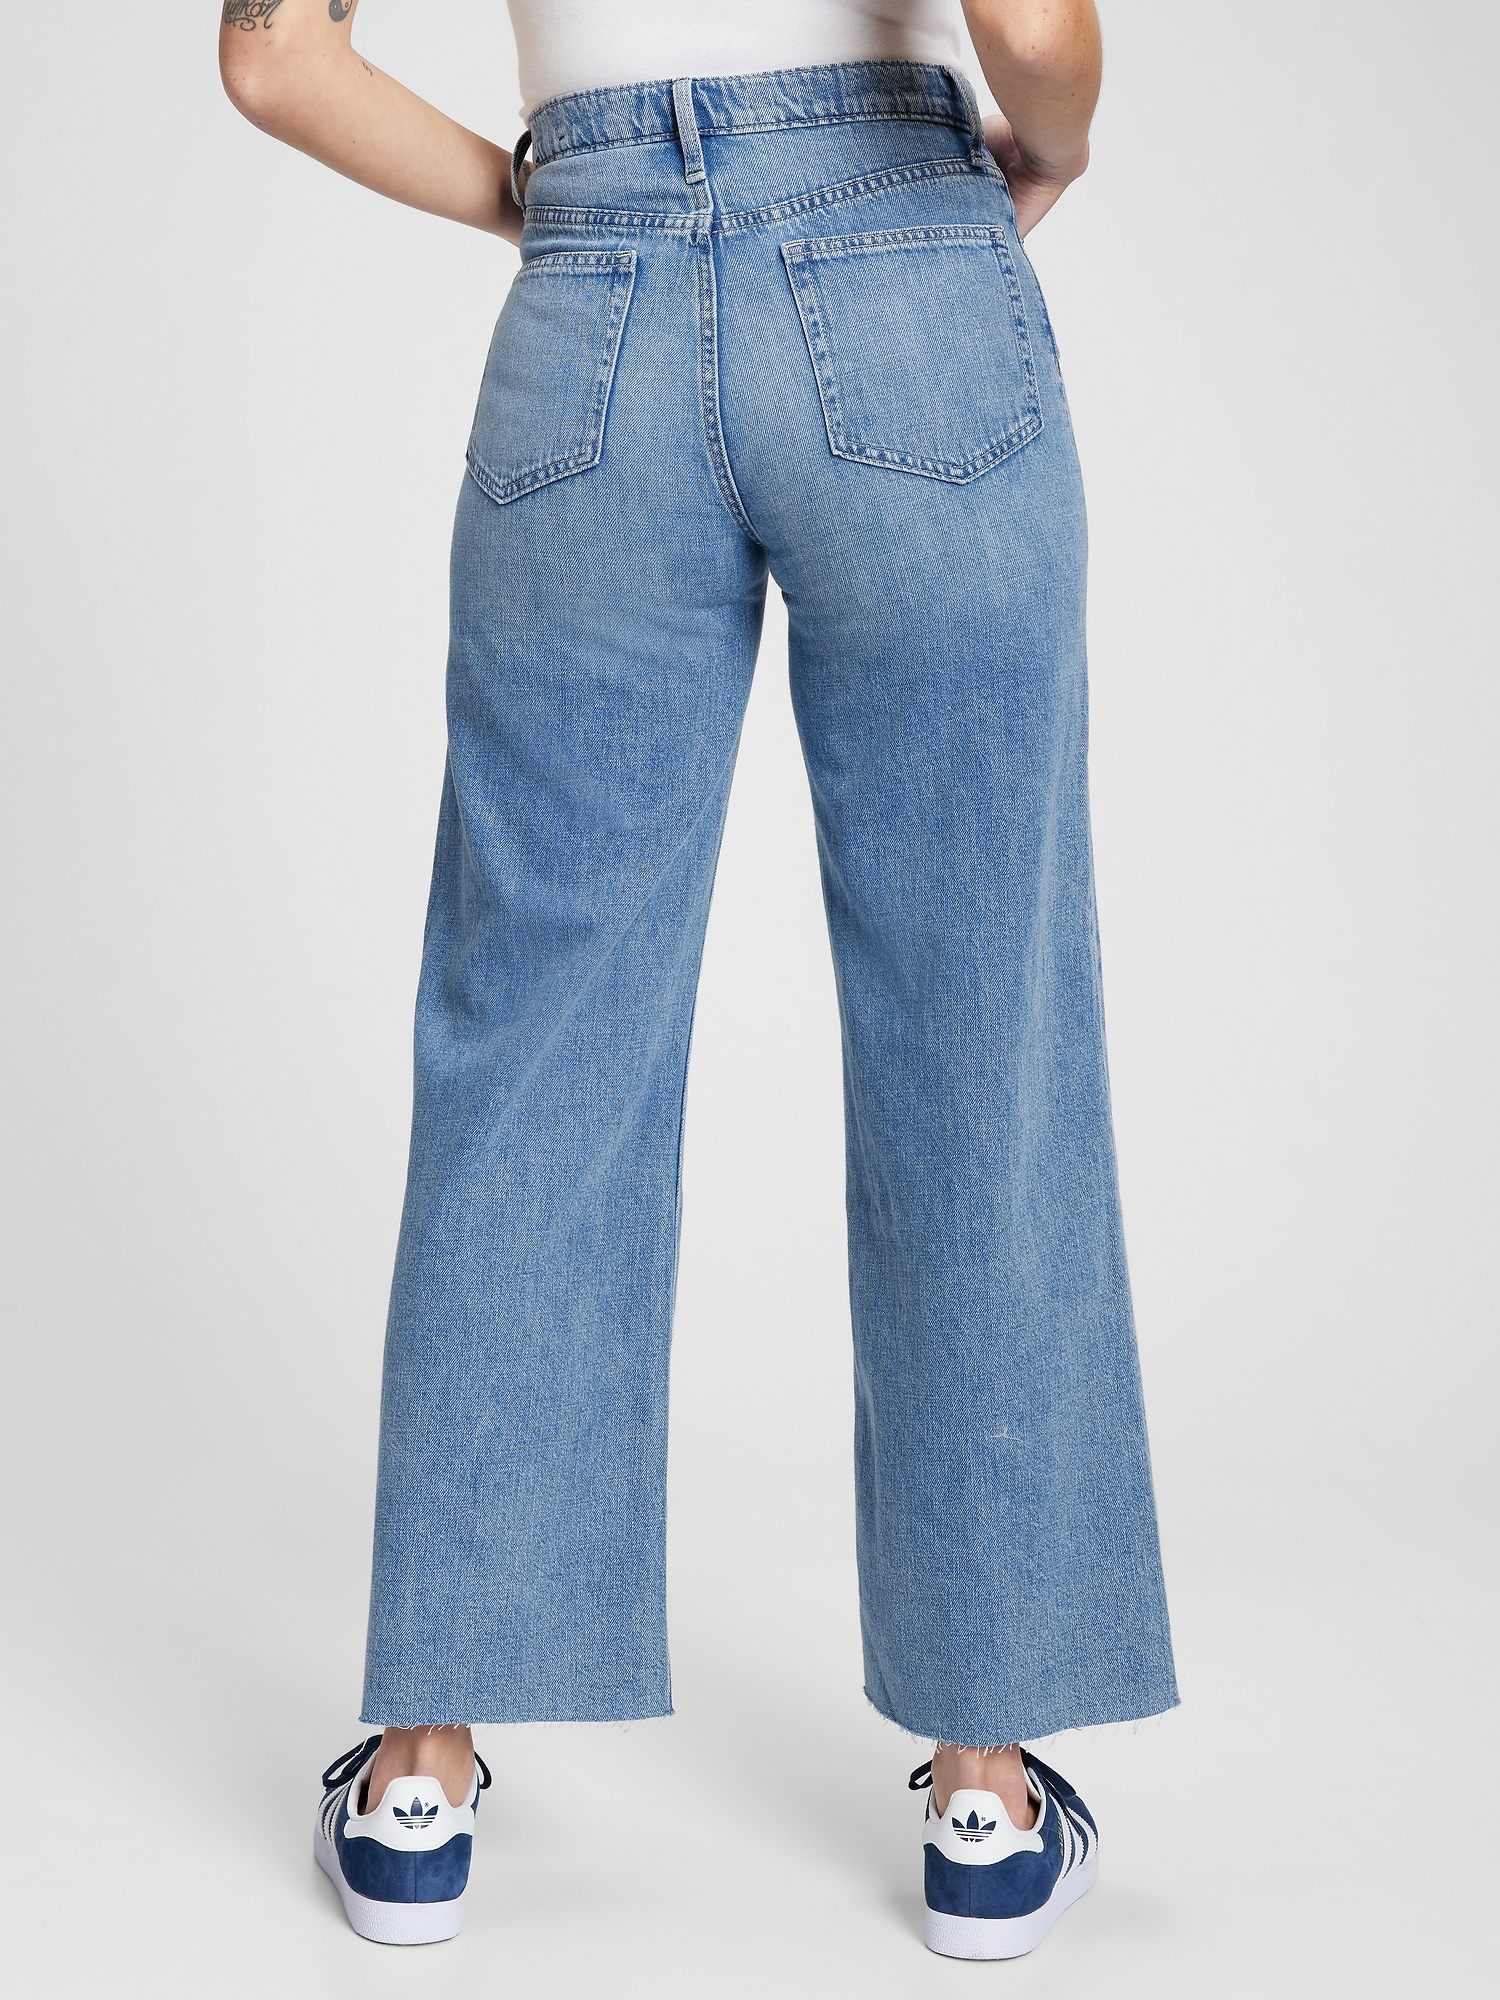 Jeans Gap In Back | lupon.gov.ph